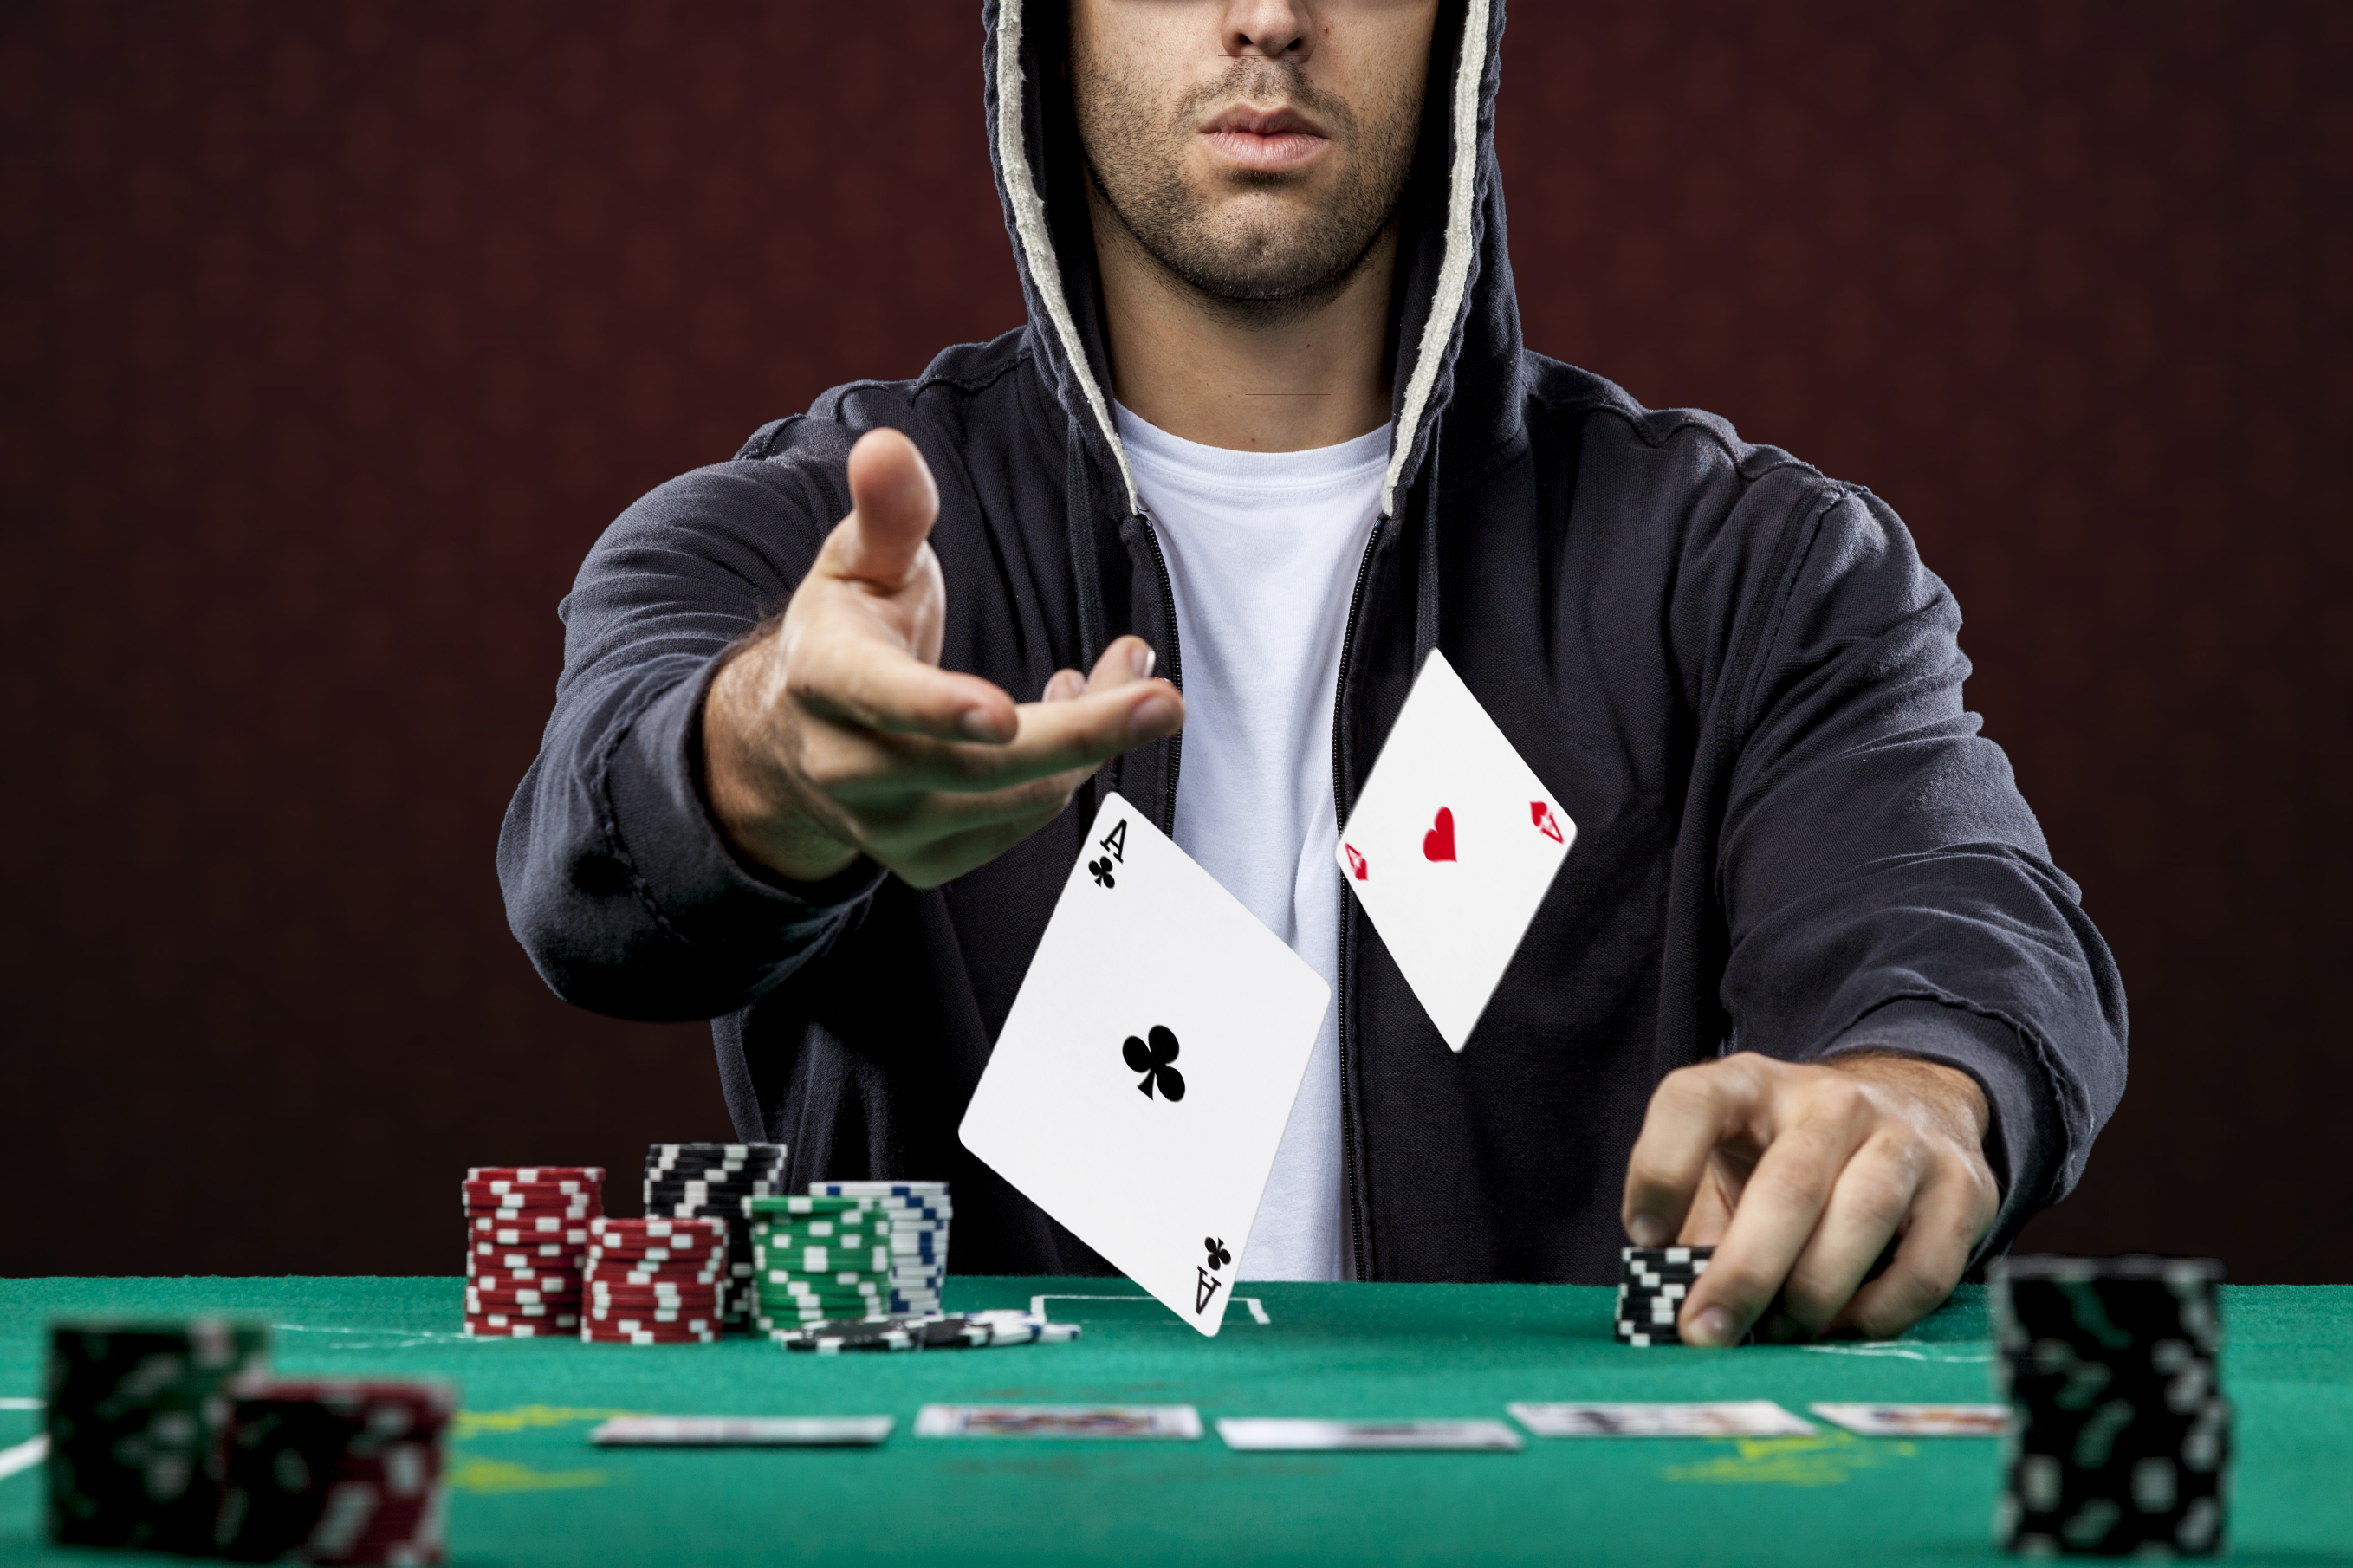 Он играть в карты и выигрывать деньги. Покерист Кристофер. Покер. Игрок в казино.